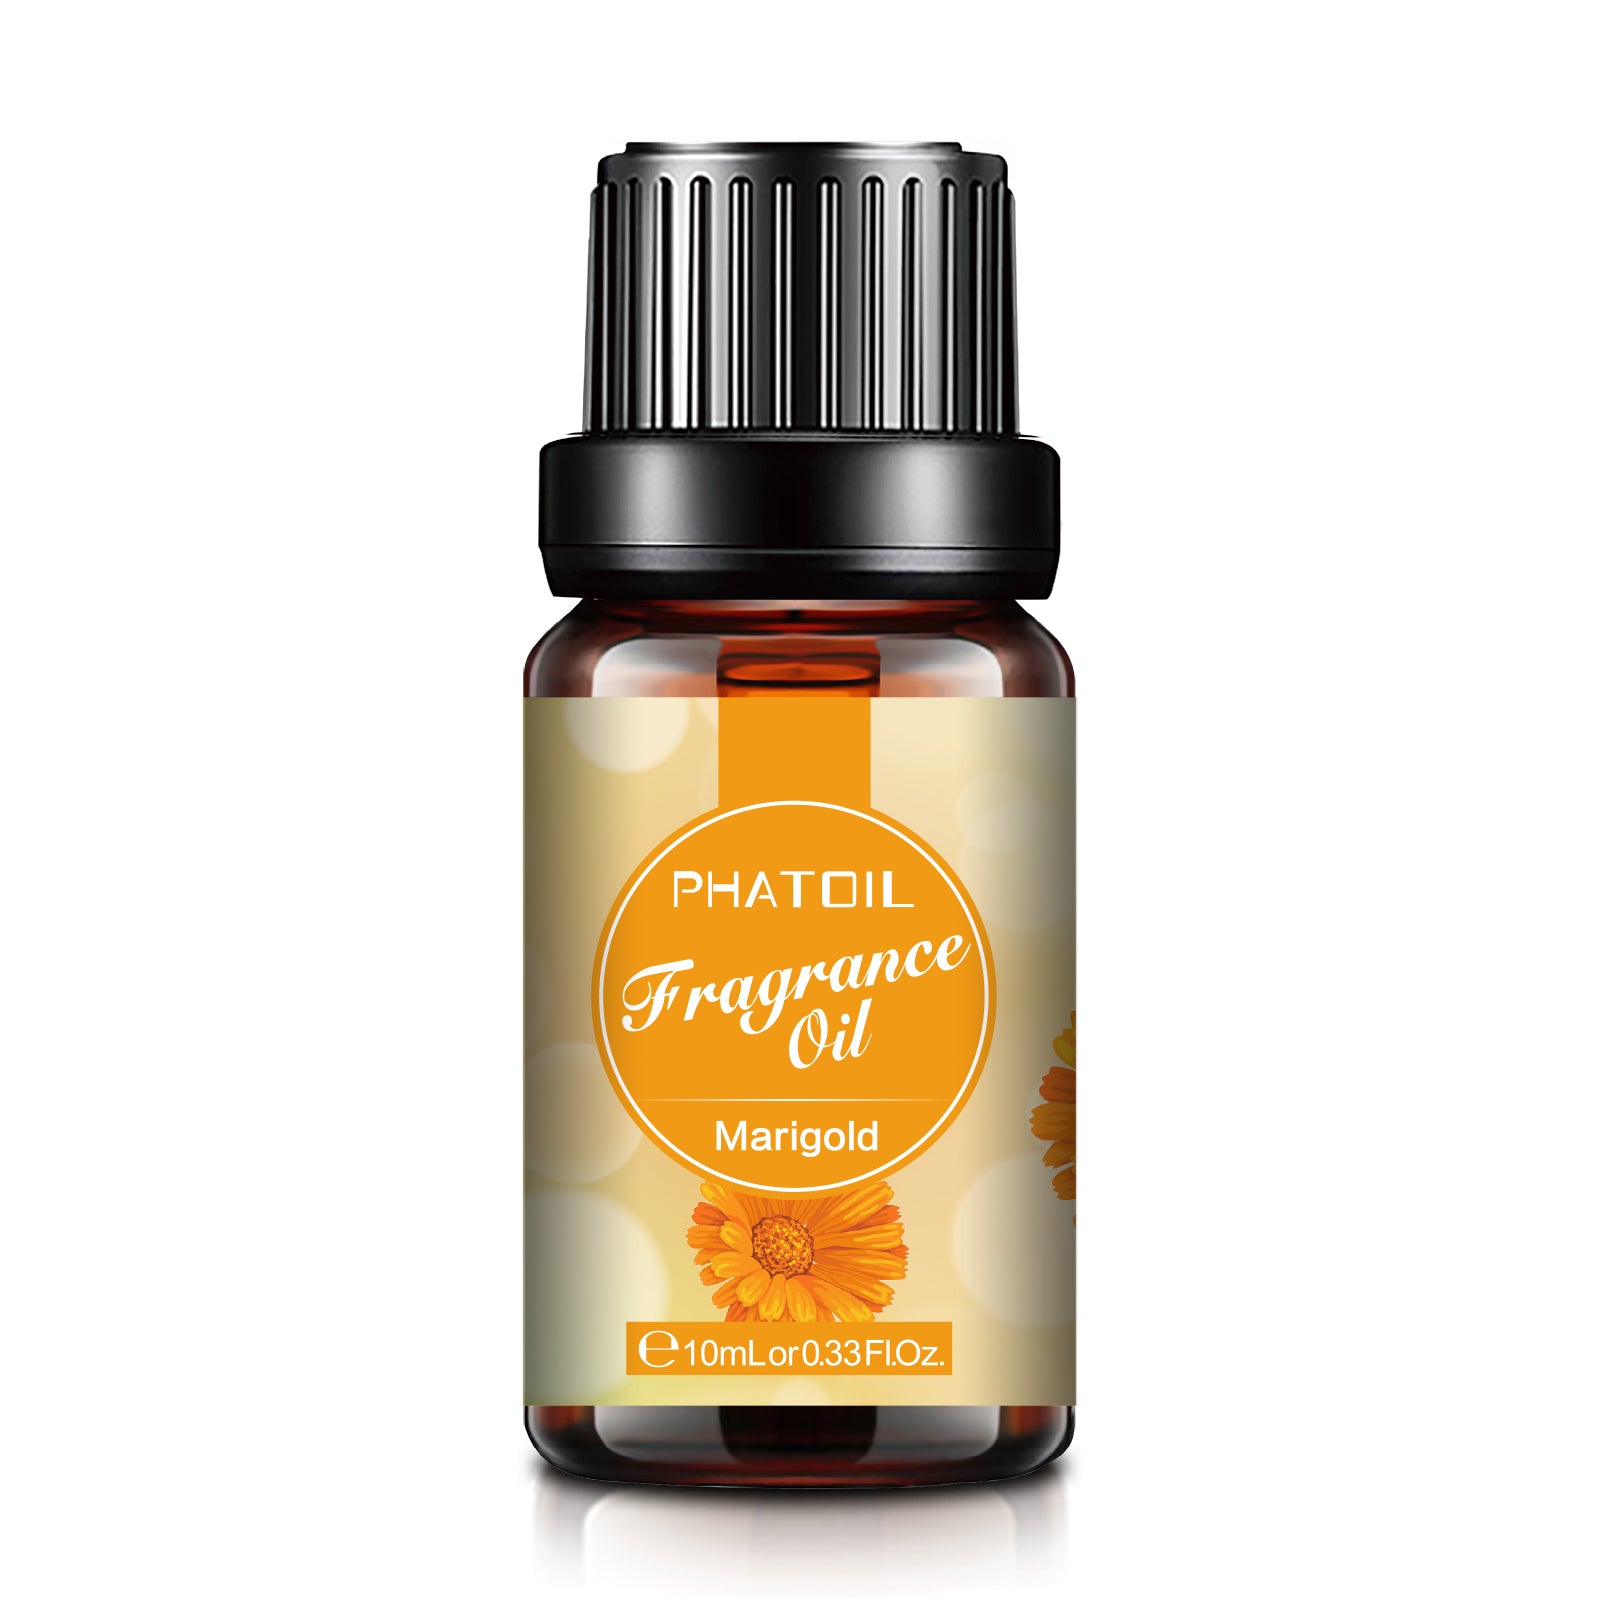 Marigold Fragrance Oil-0.33Oz-Bottle-PHATOIL